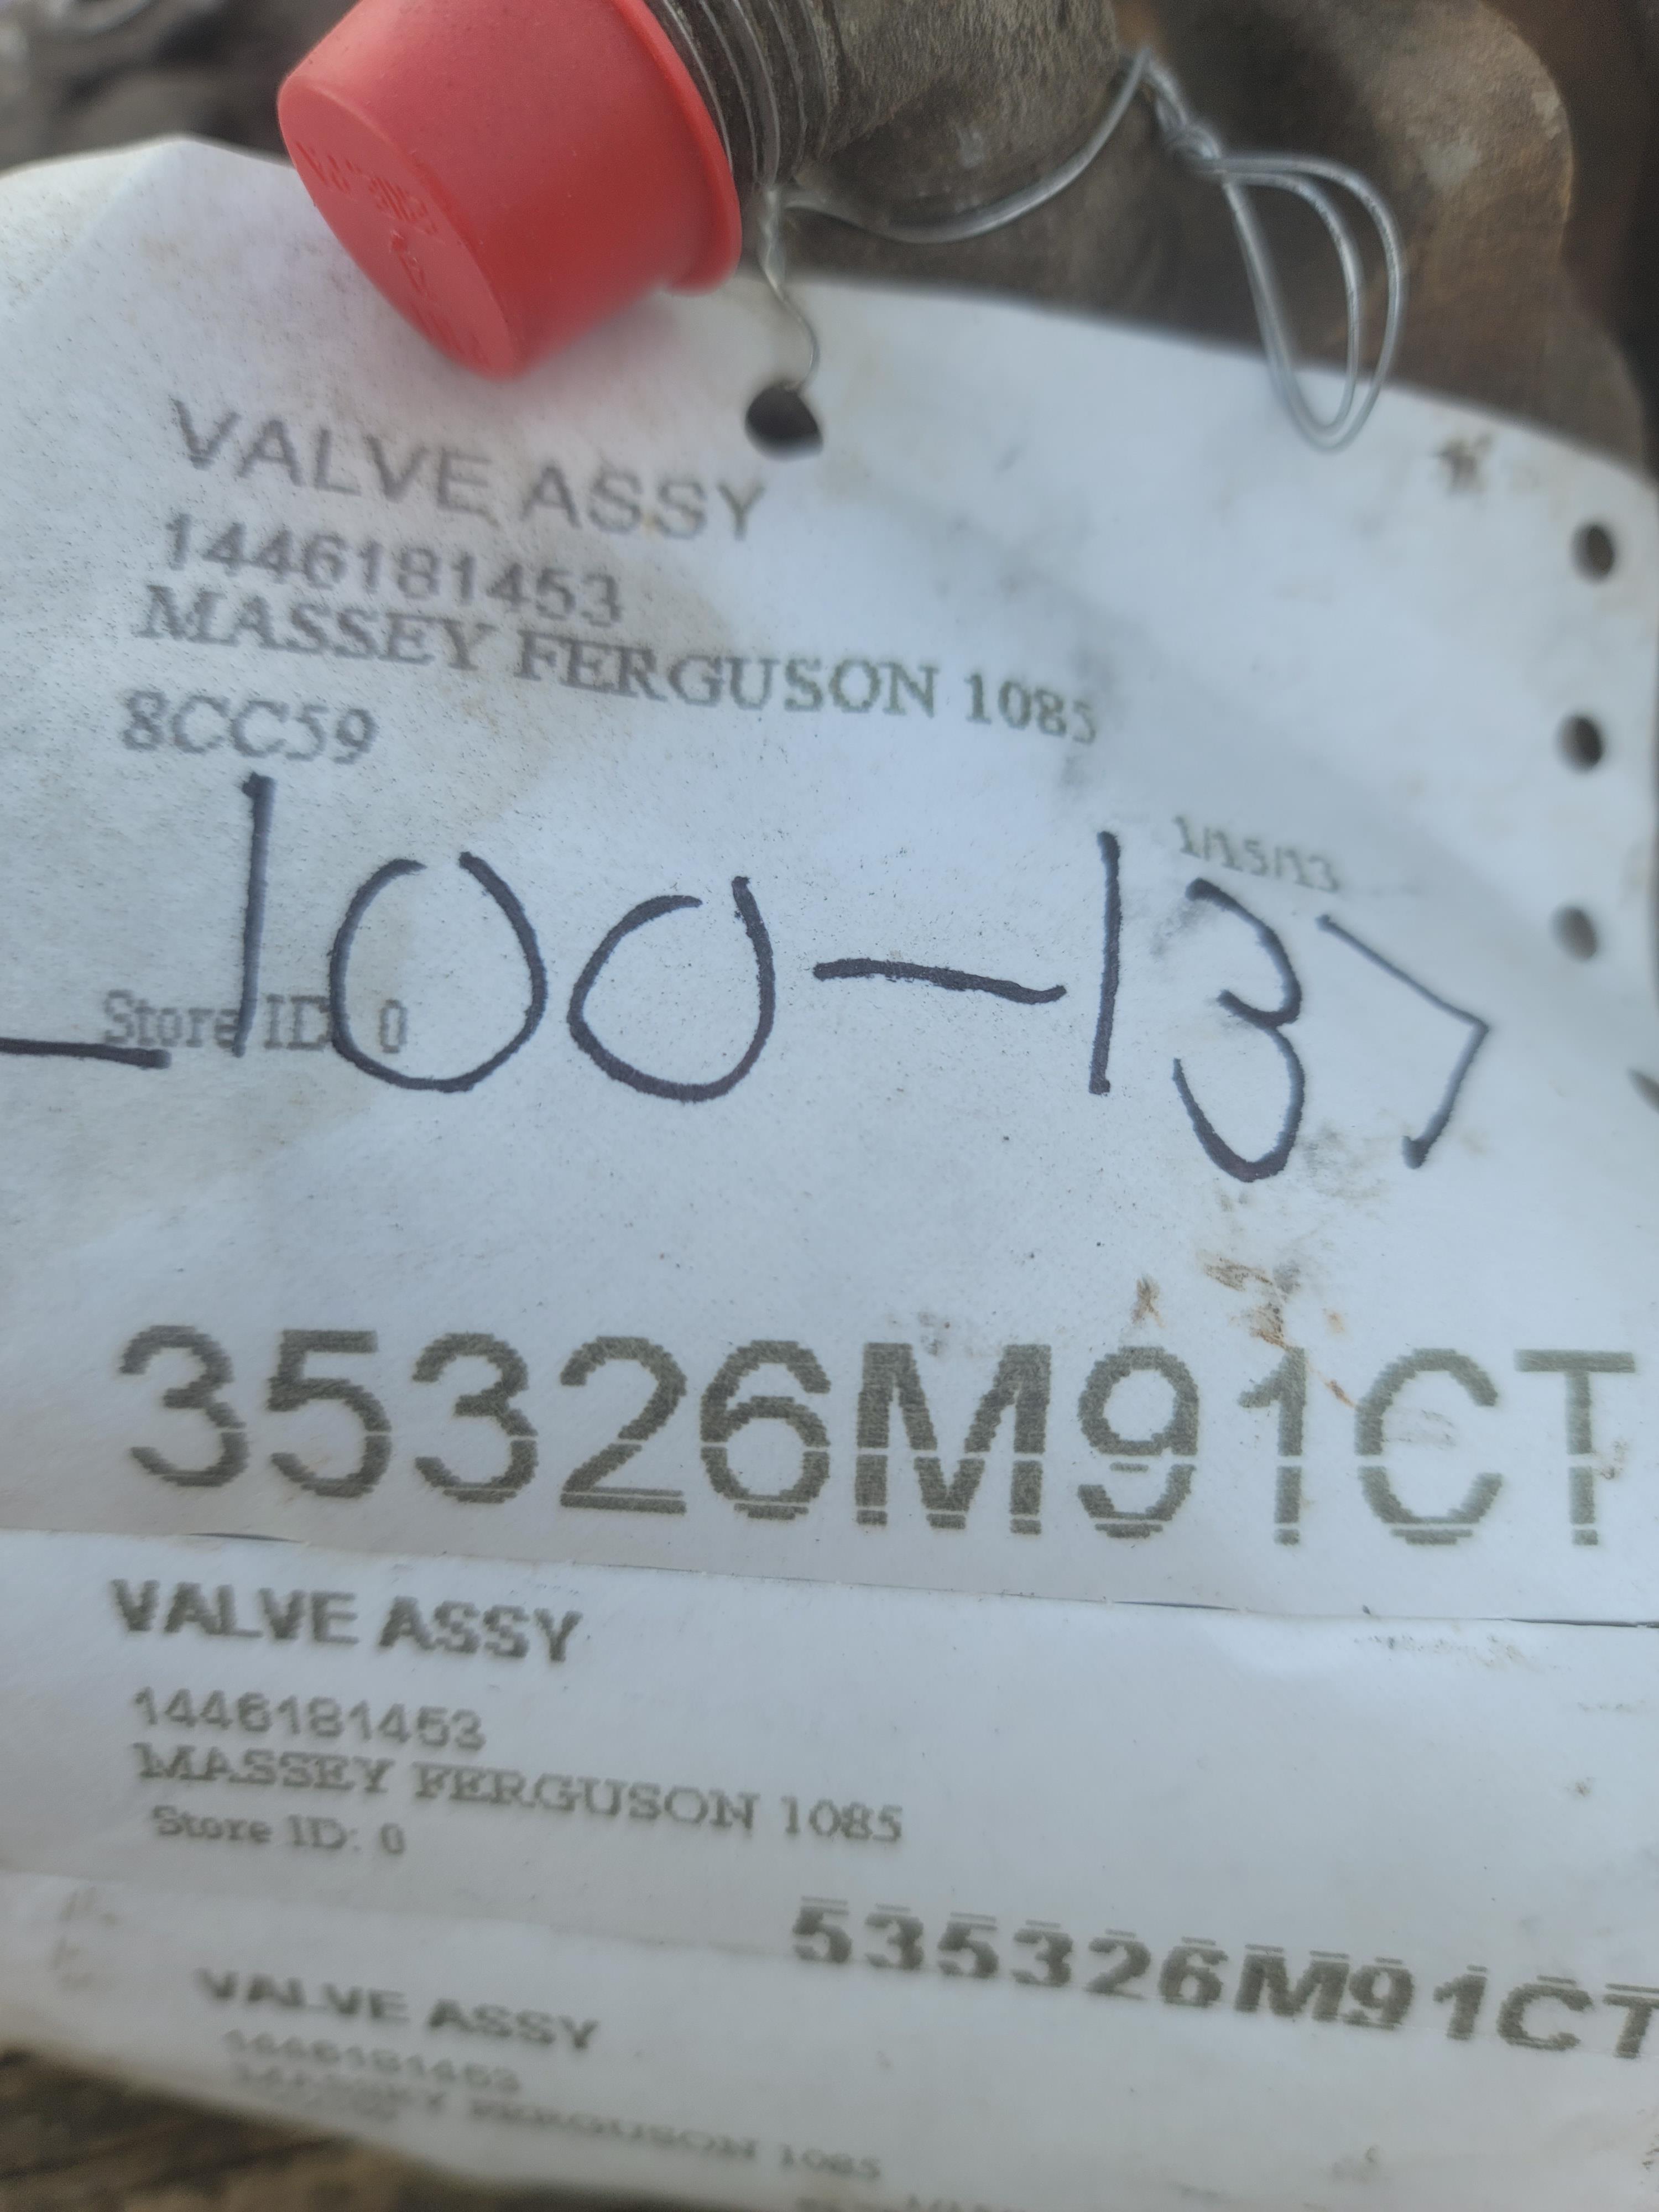 Valve assembly mf 1085